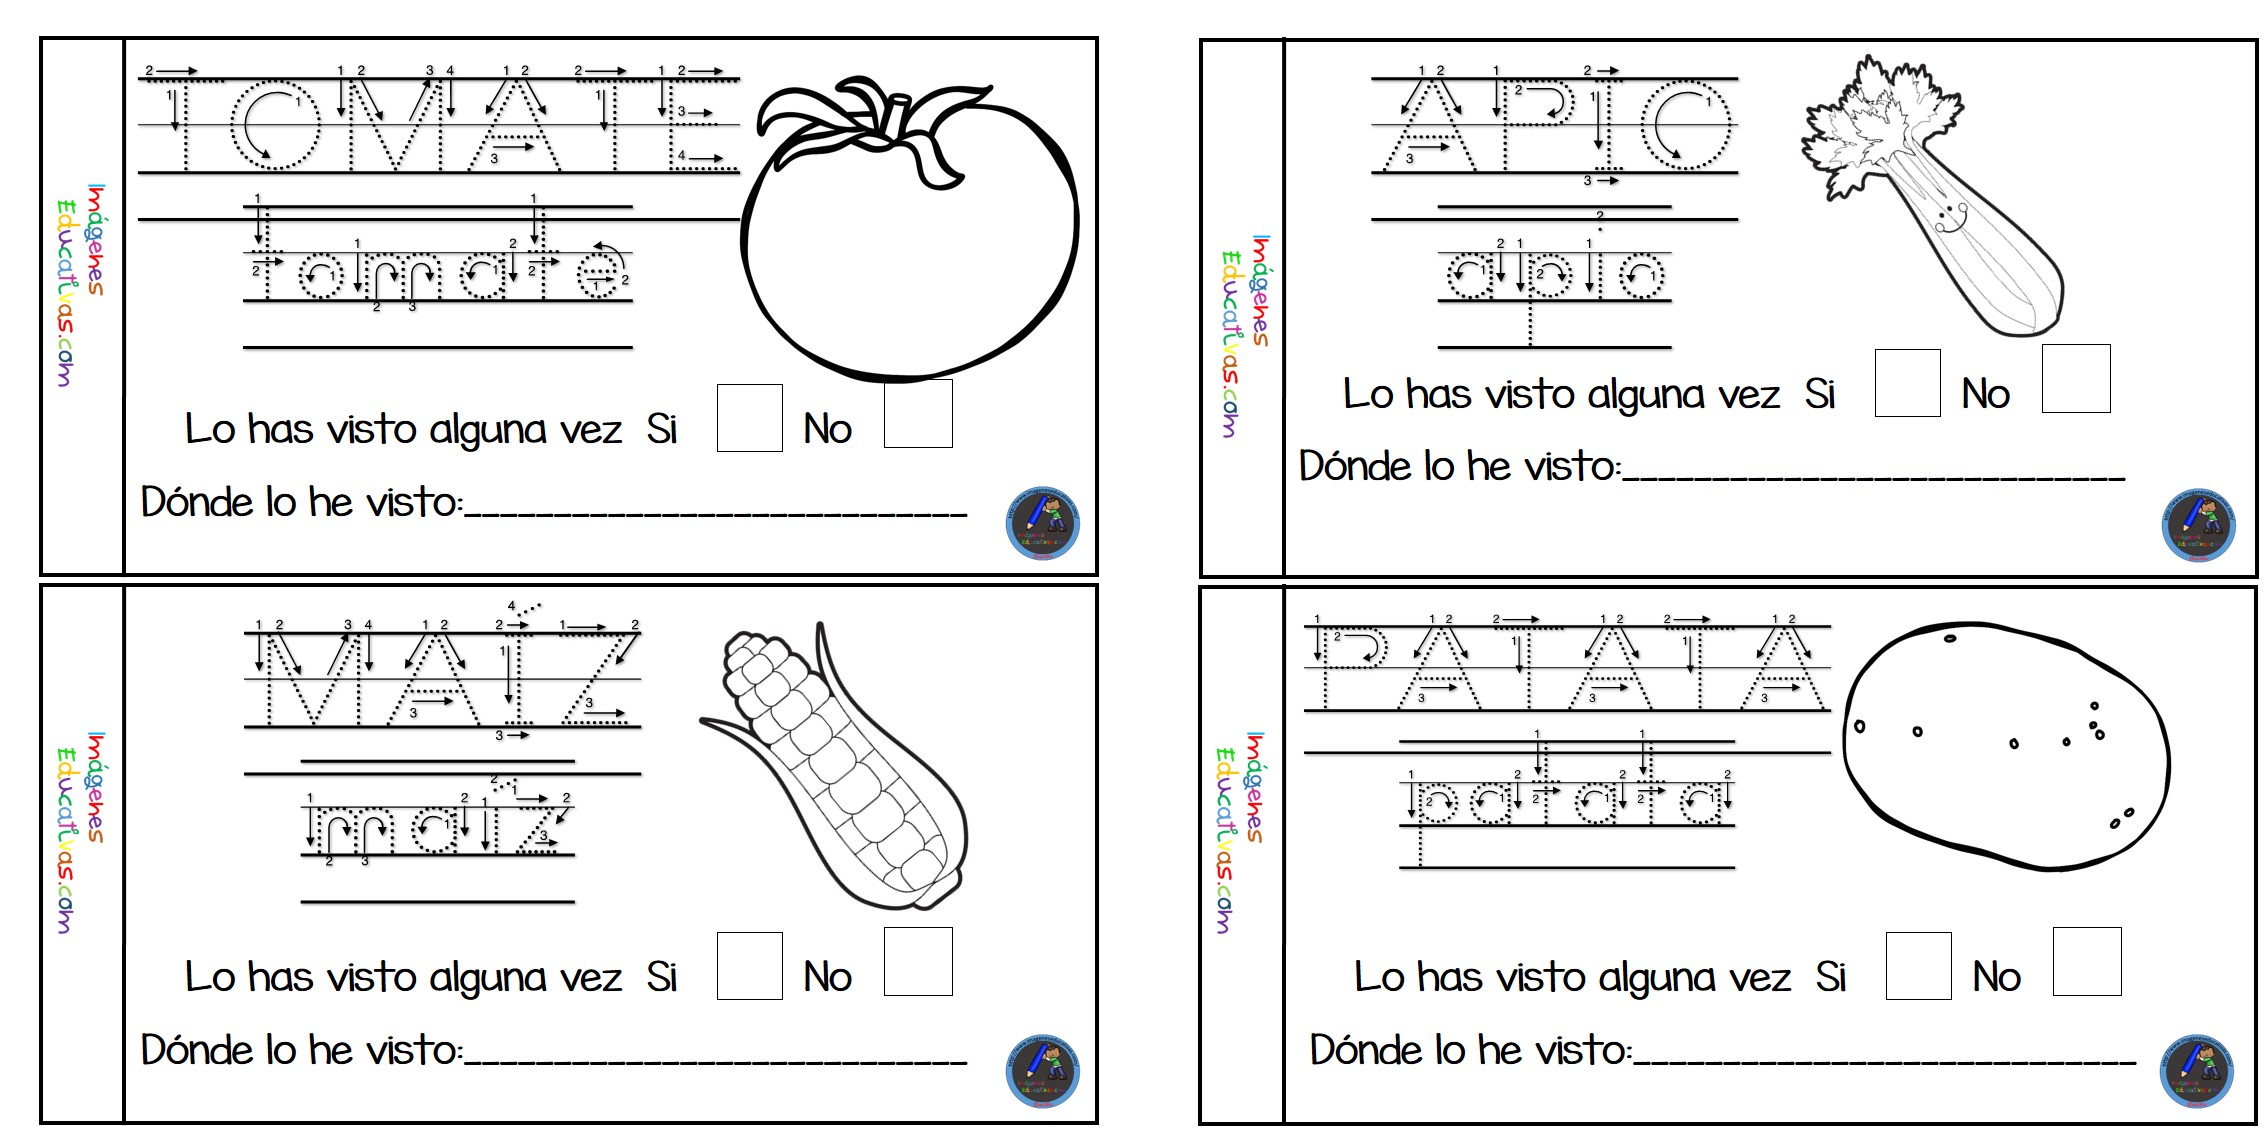 Mi cuaderno para colorear frutas y verduras (6) - Imagenes Educativas